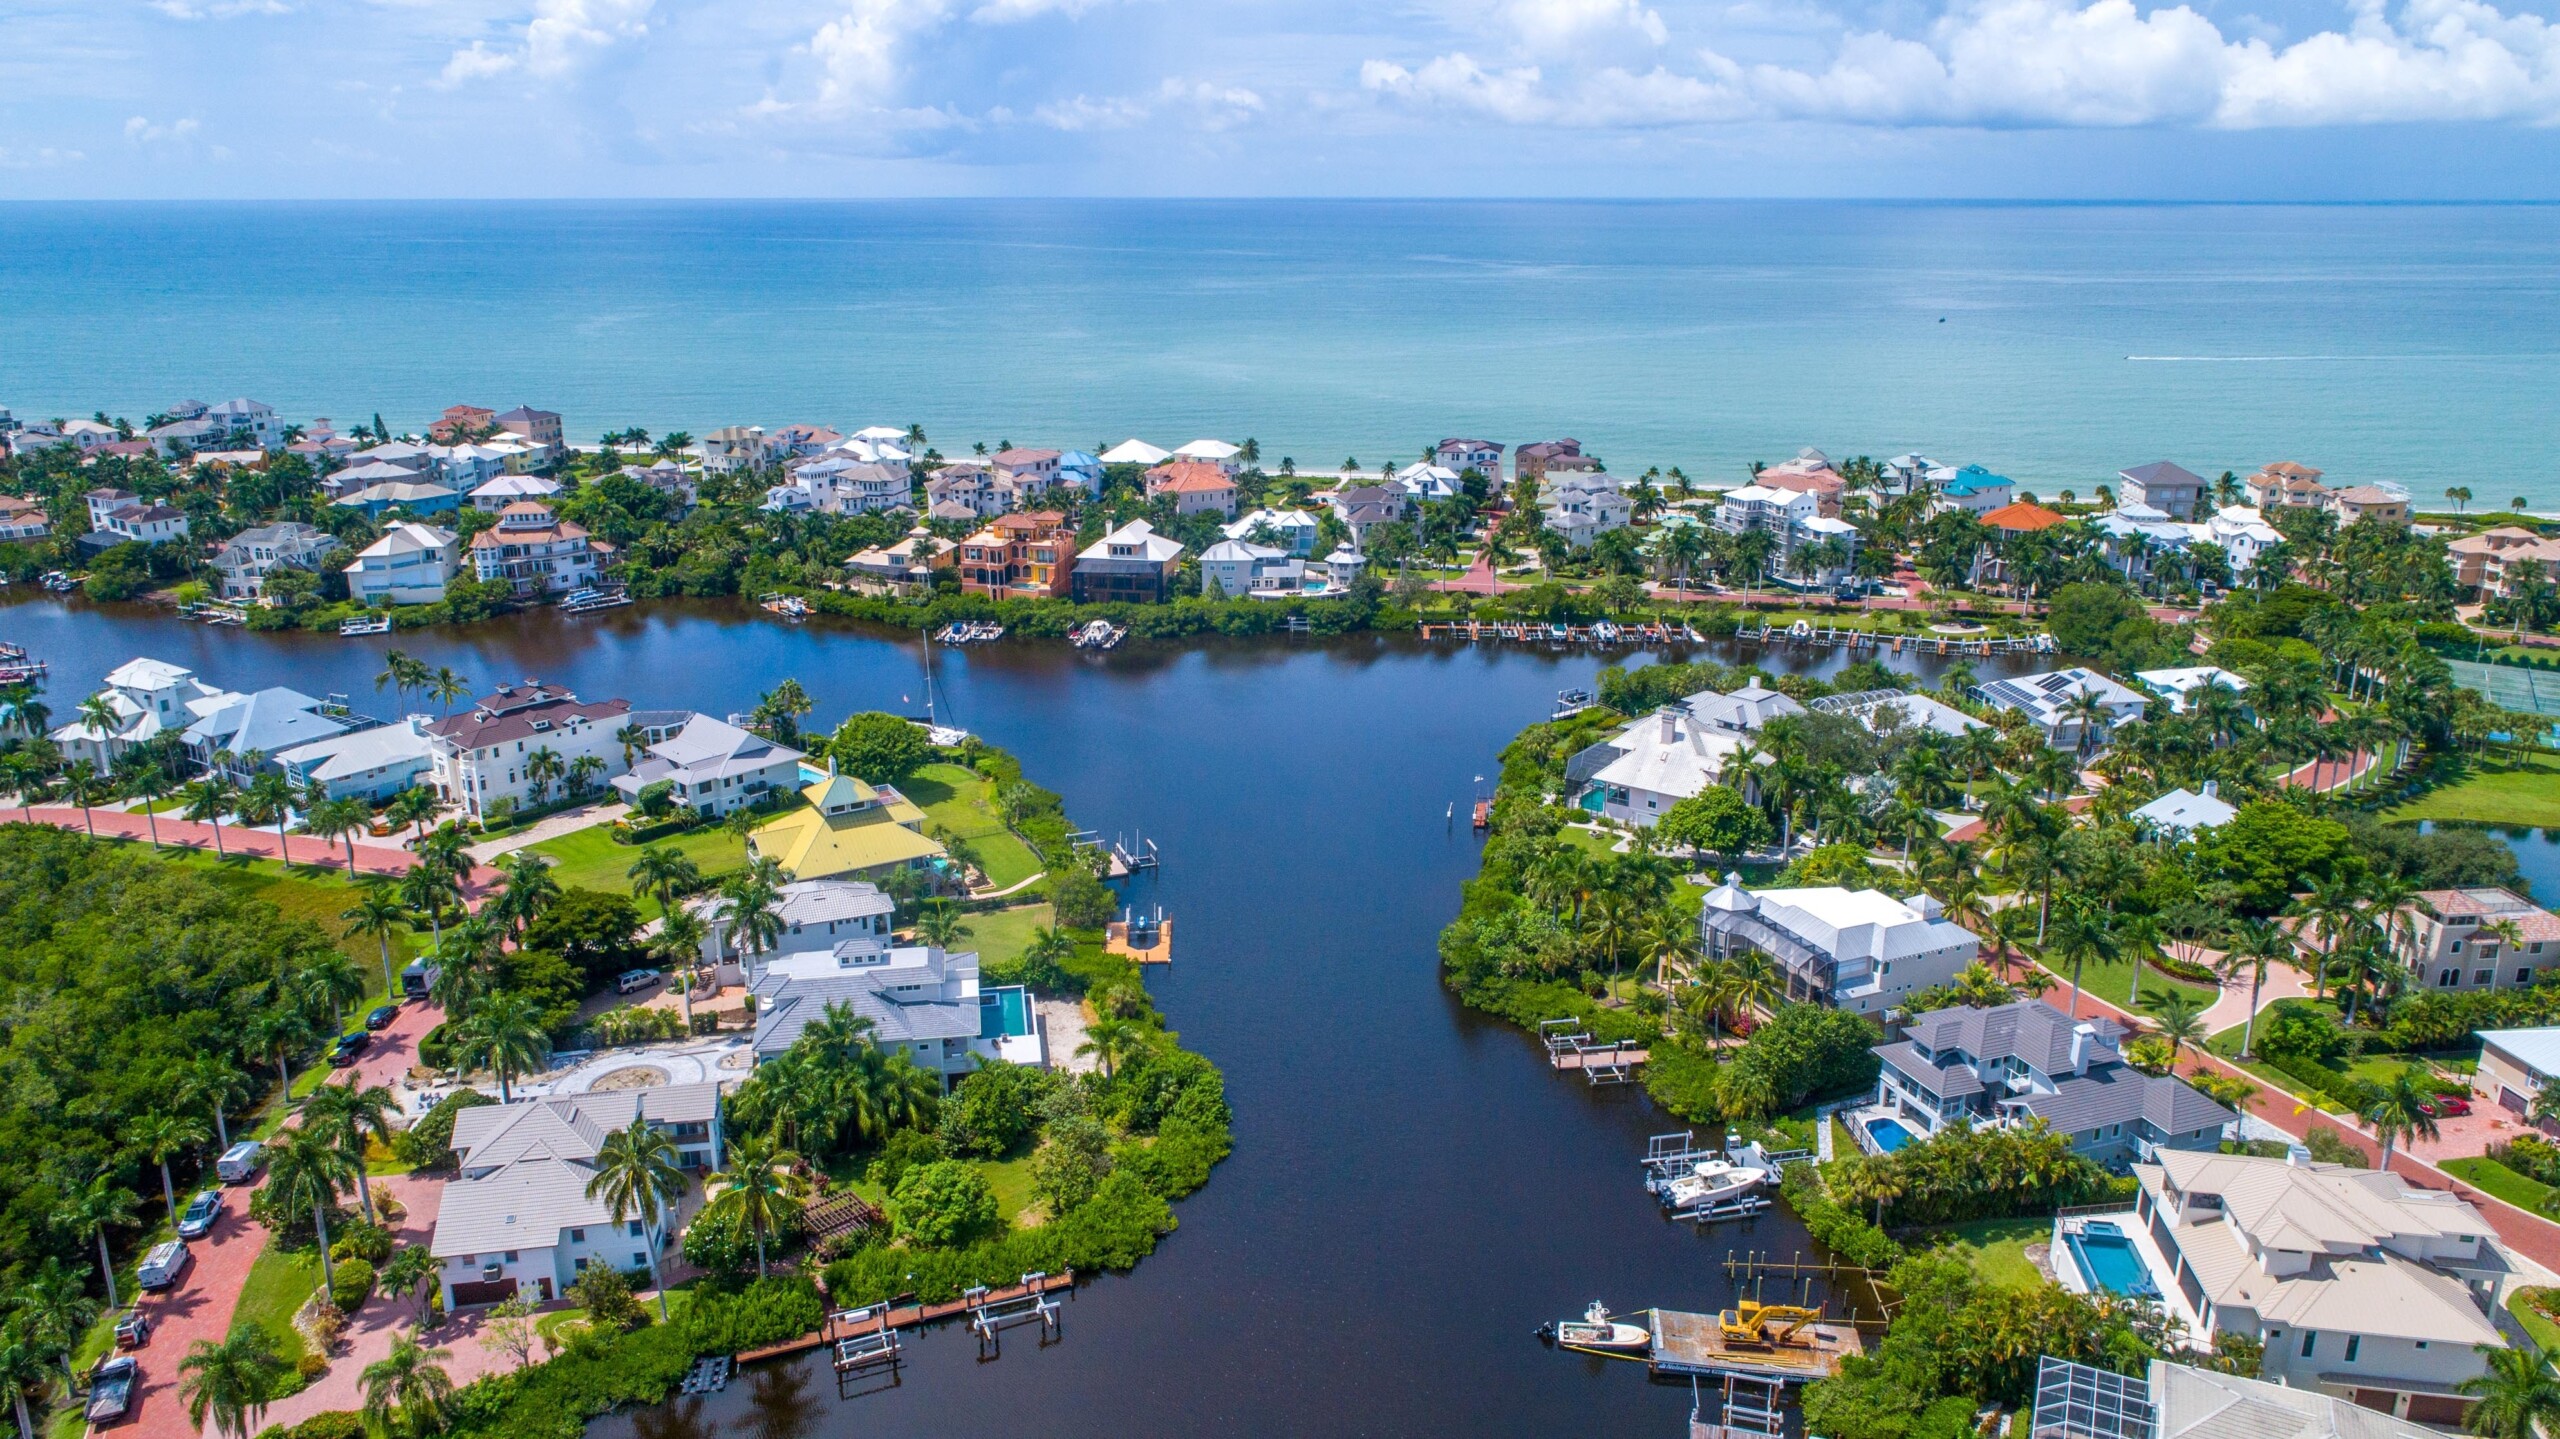 Widok z lotu ptaka z drona na domy z dokami na wodach Blue Bay otoczone lasami namorzynowymi w Bonita Springs na Florydzie i Zatokę Meksykańską w tle z czystym niebem, licencja: shutterstock/By RayDukin